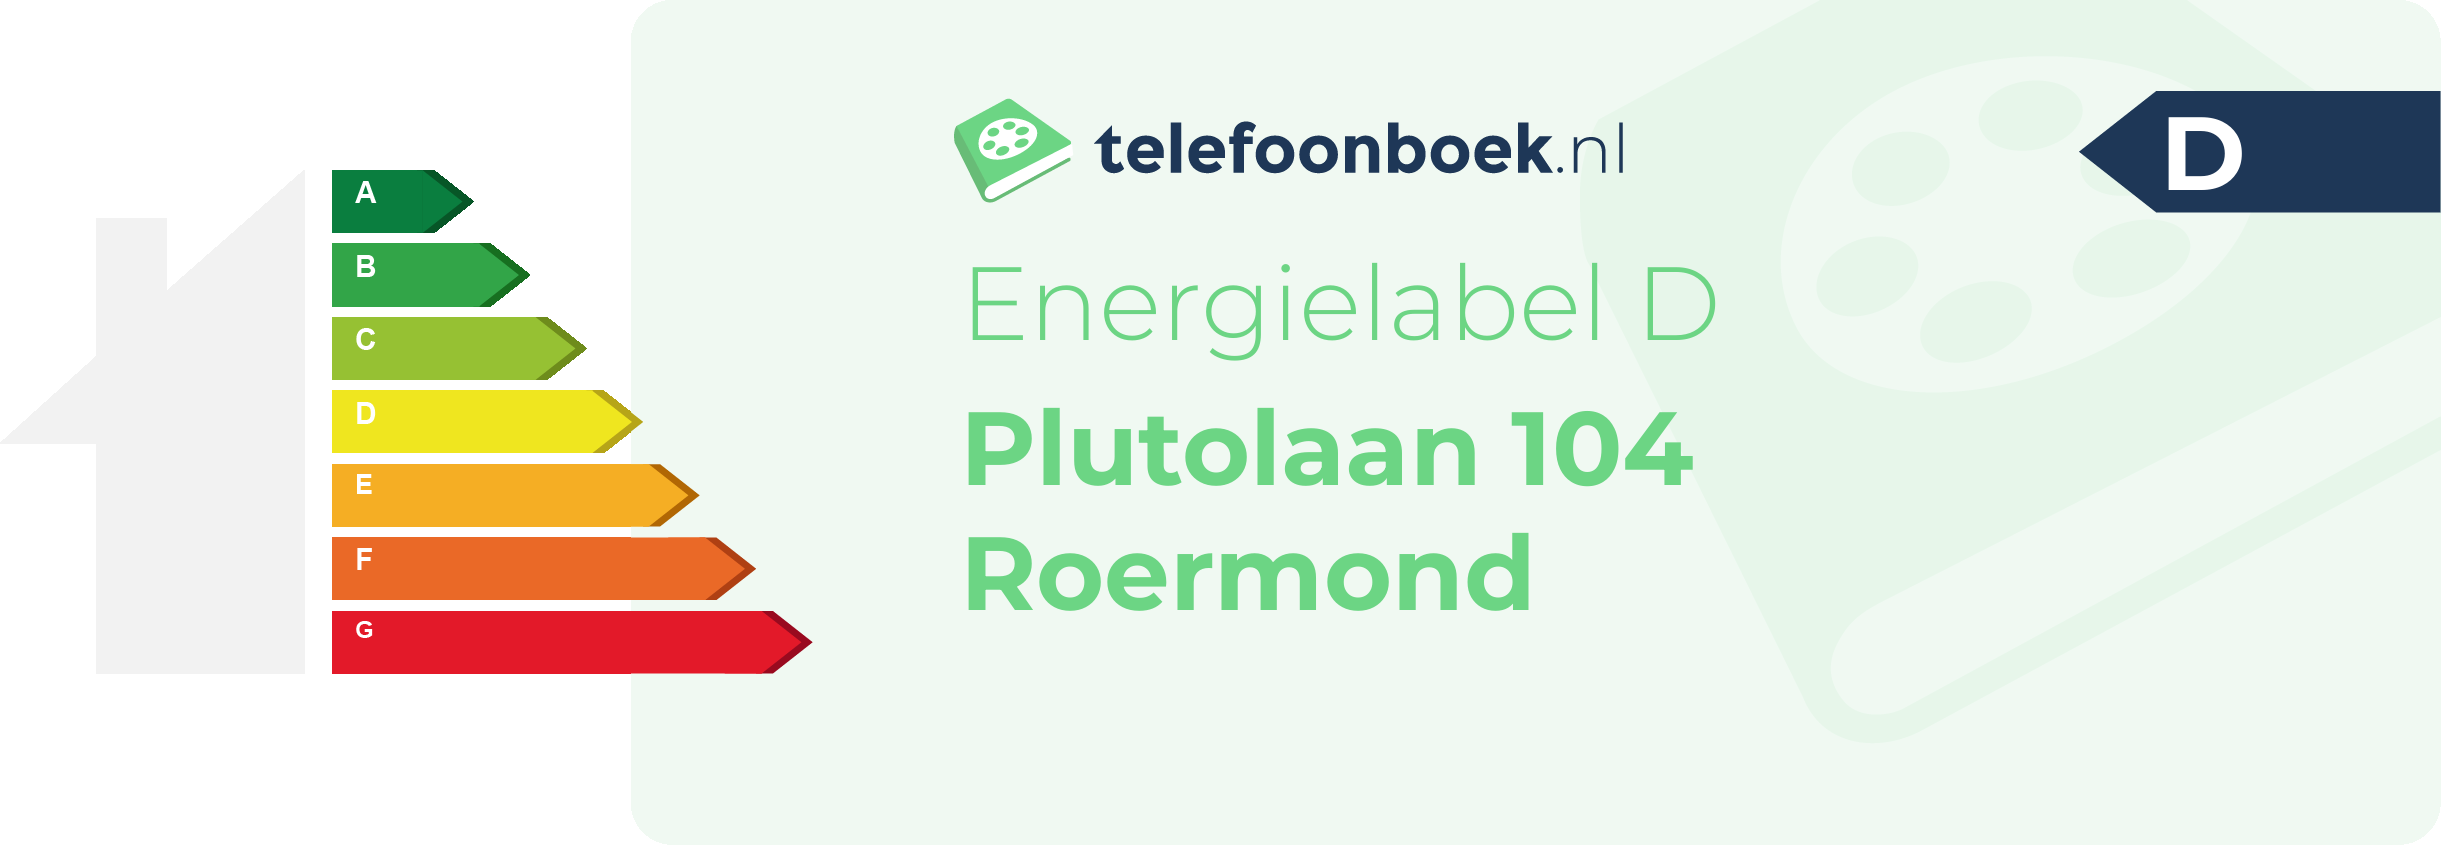 Energielabel Plutolaan 104 Roermond